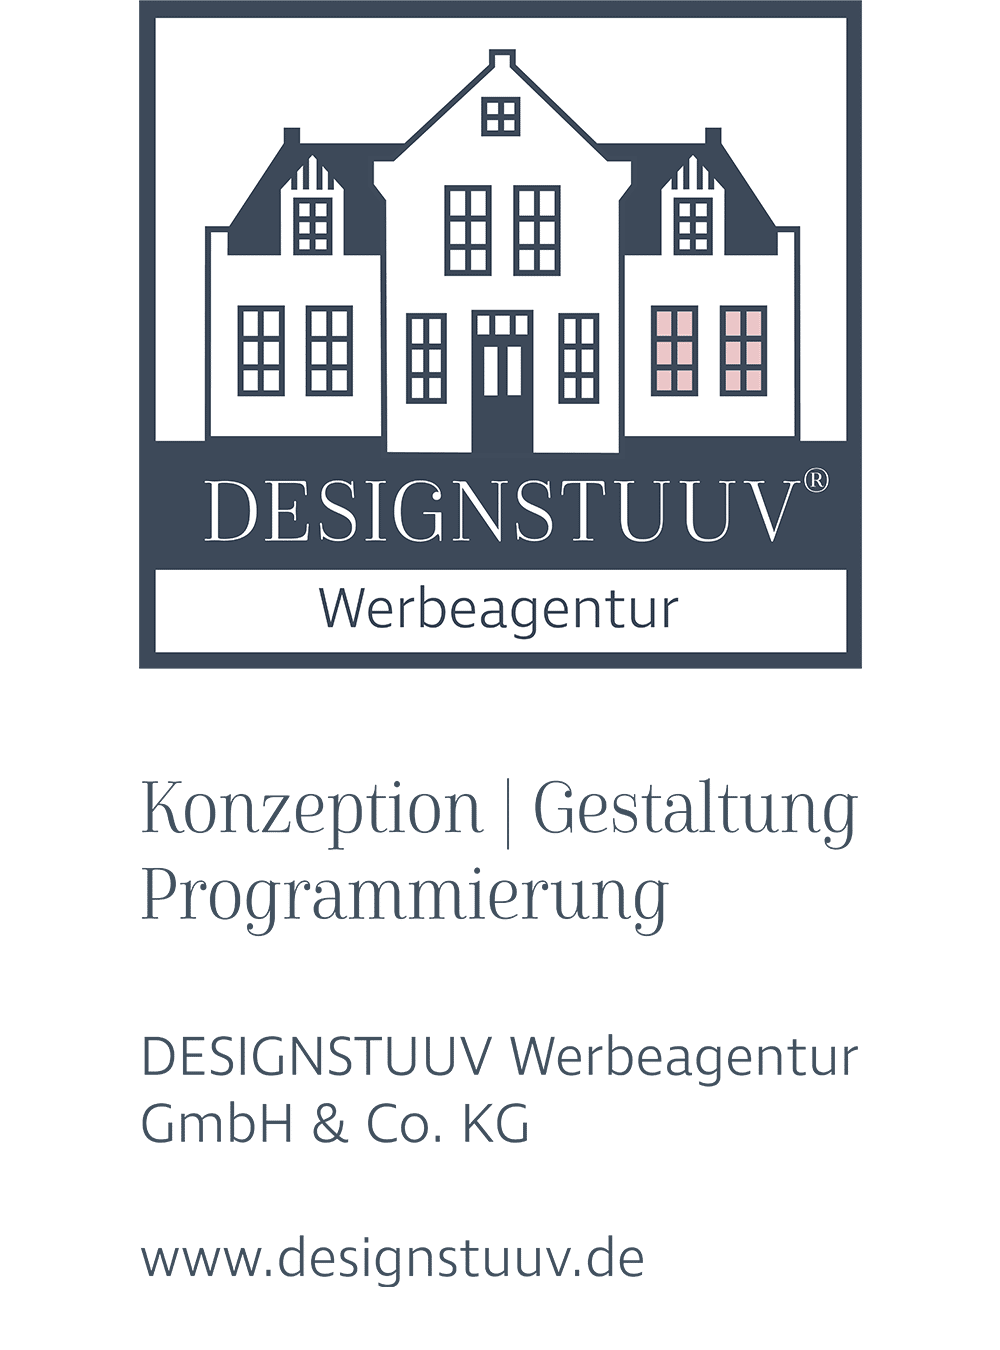 DESIGNSTUUV Werbeagentur GmbH & Co. KG